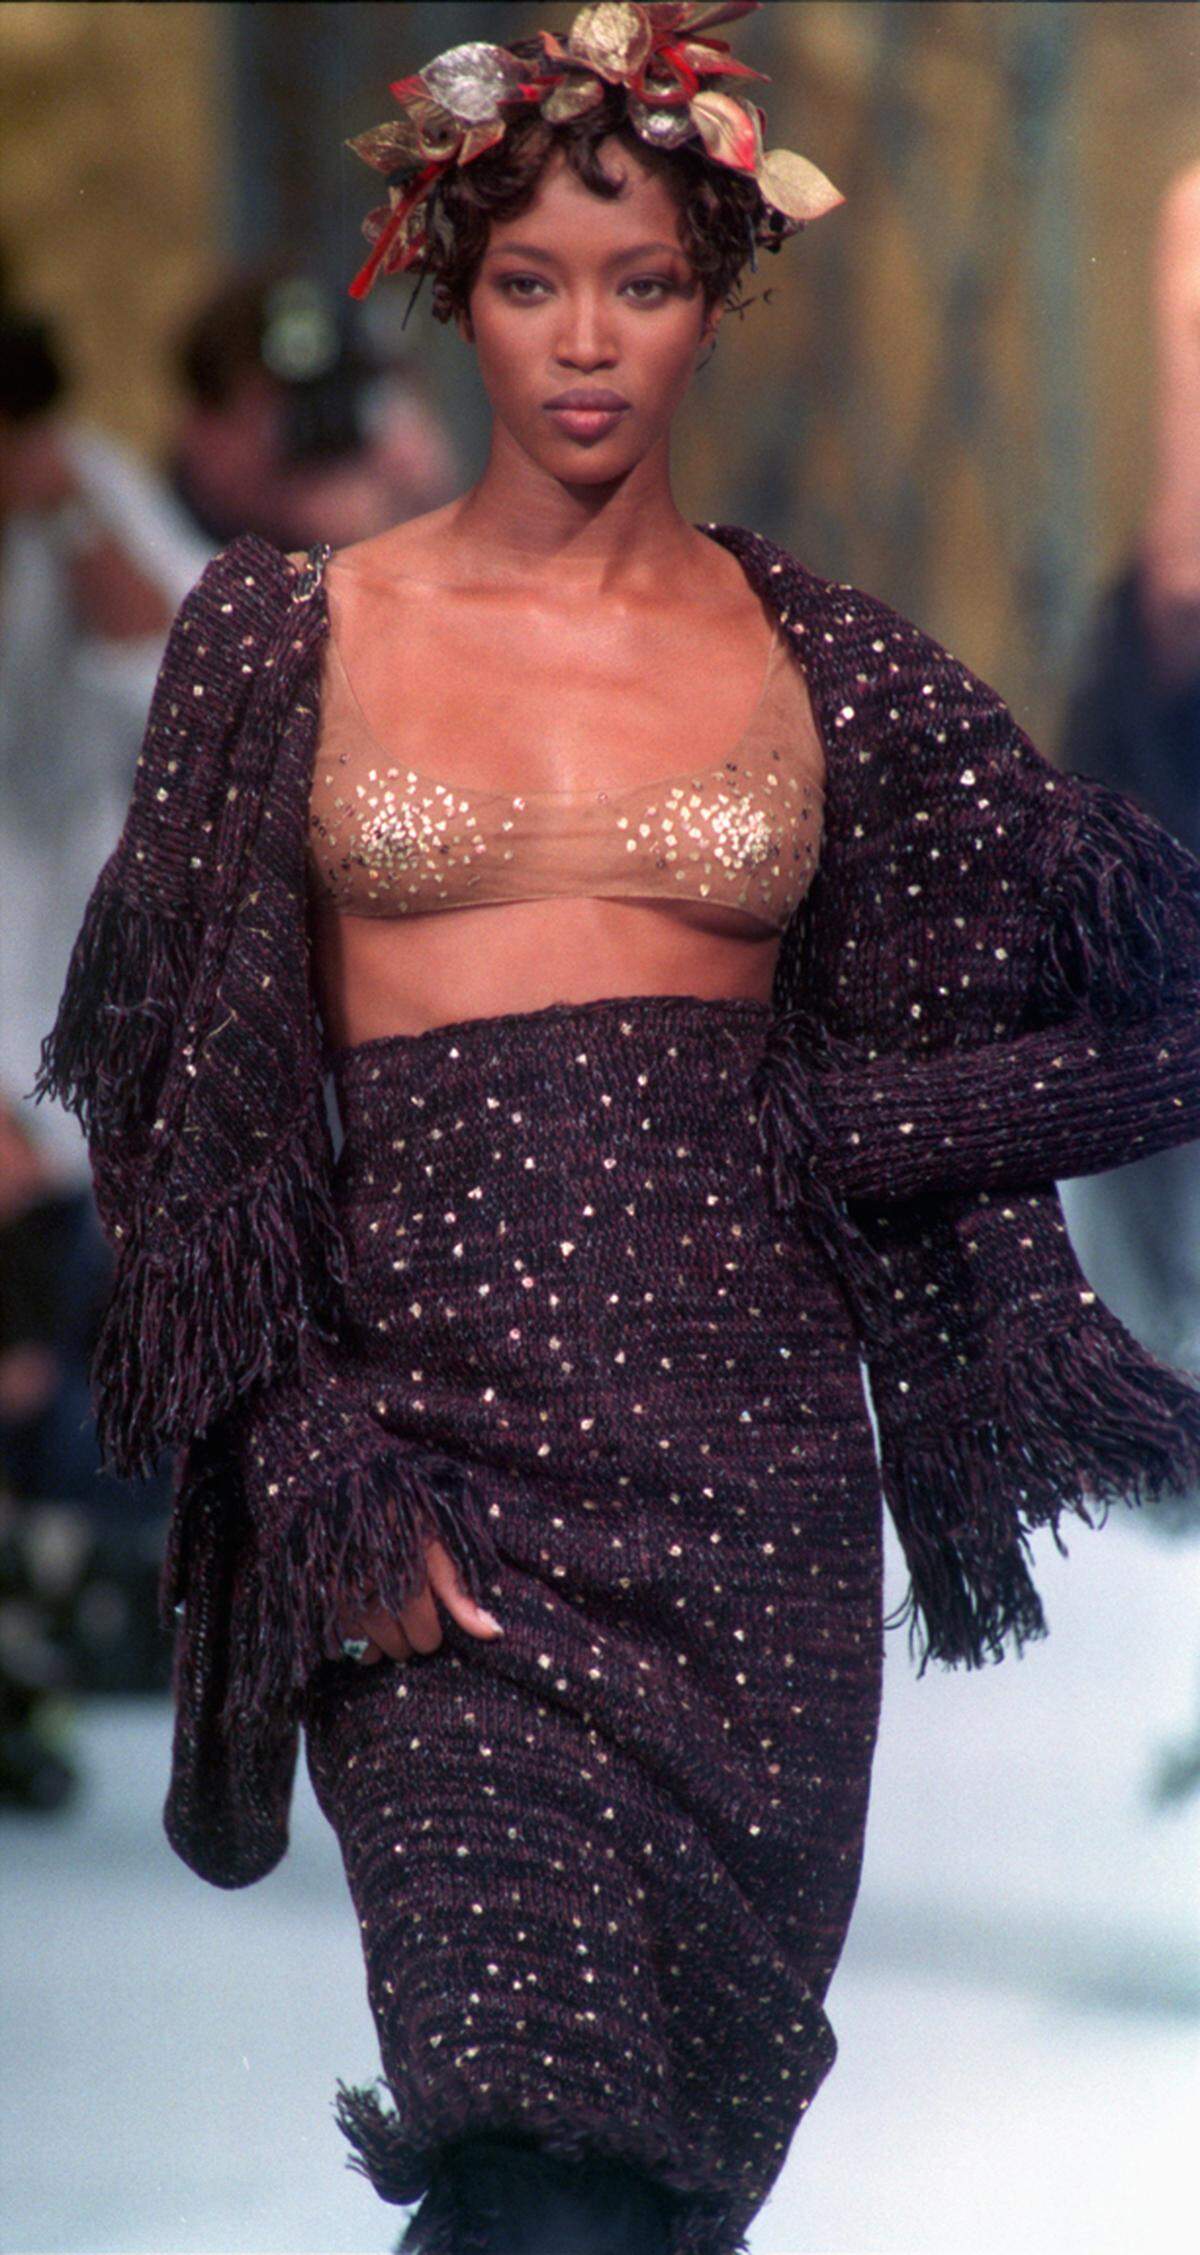 1985 wurde Naomi Campbell als Model entdeckt und kam 1988 als erstes farbiges Model aufs das Cover der französischen "Vogue".